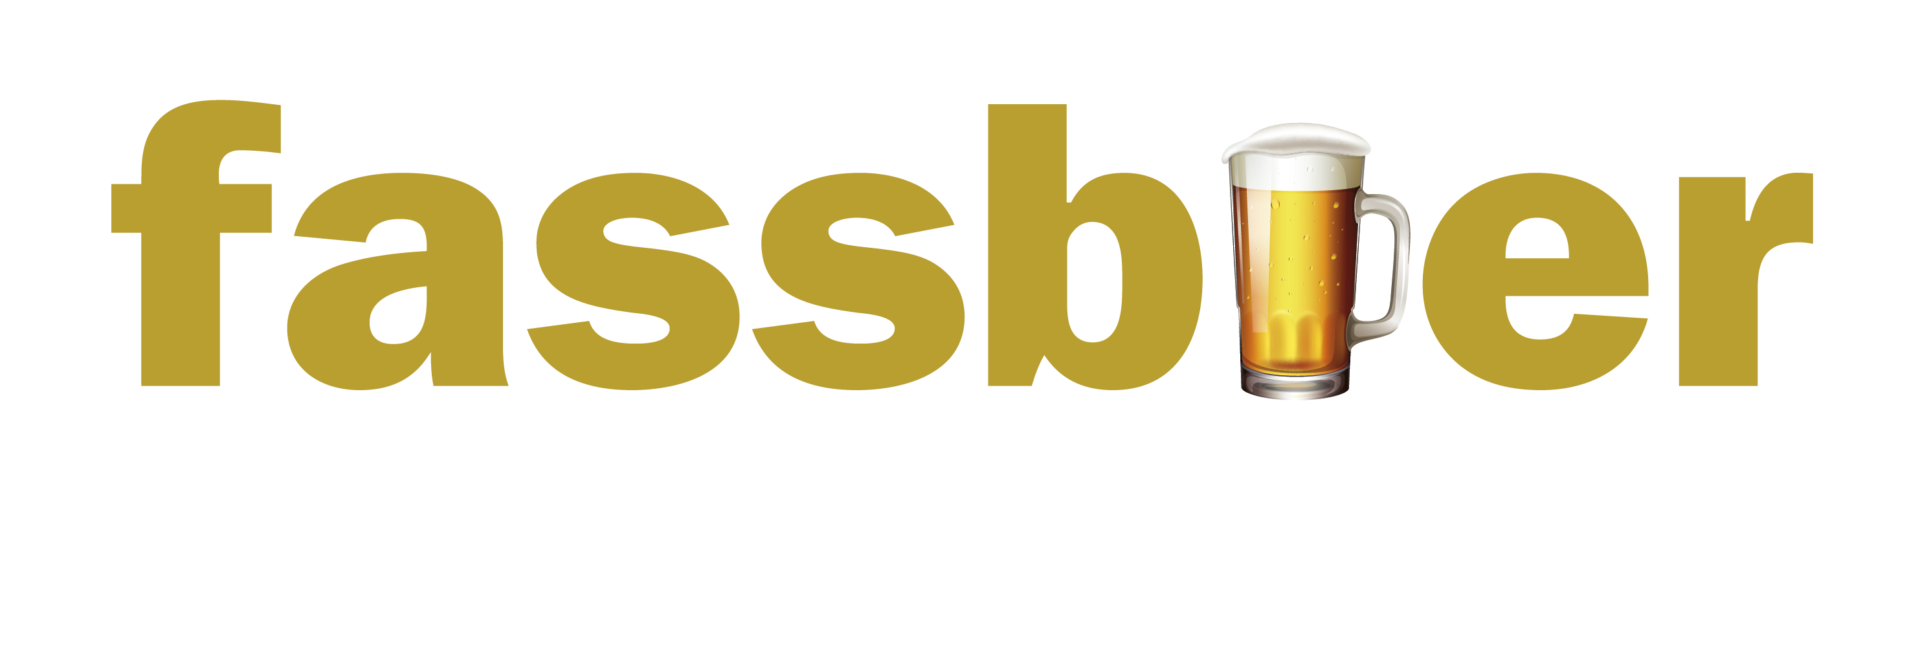 Logo fassbier.online